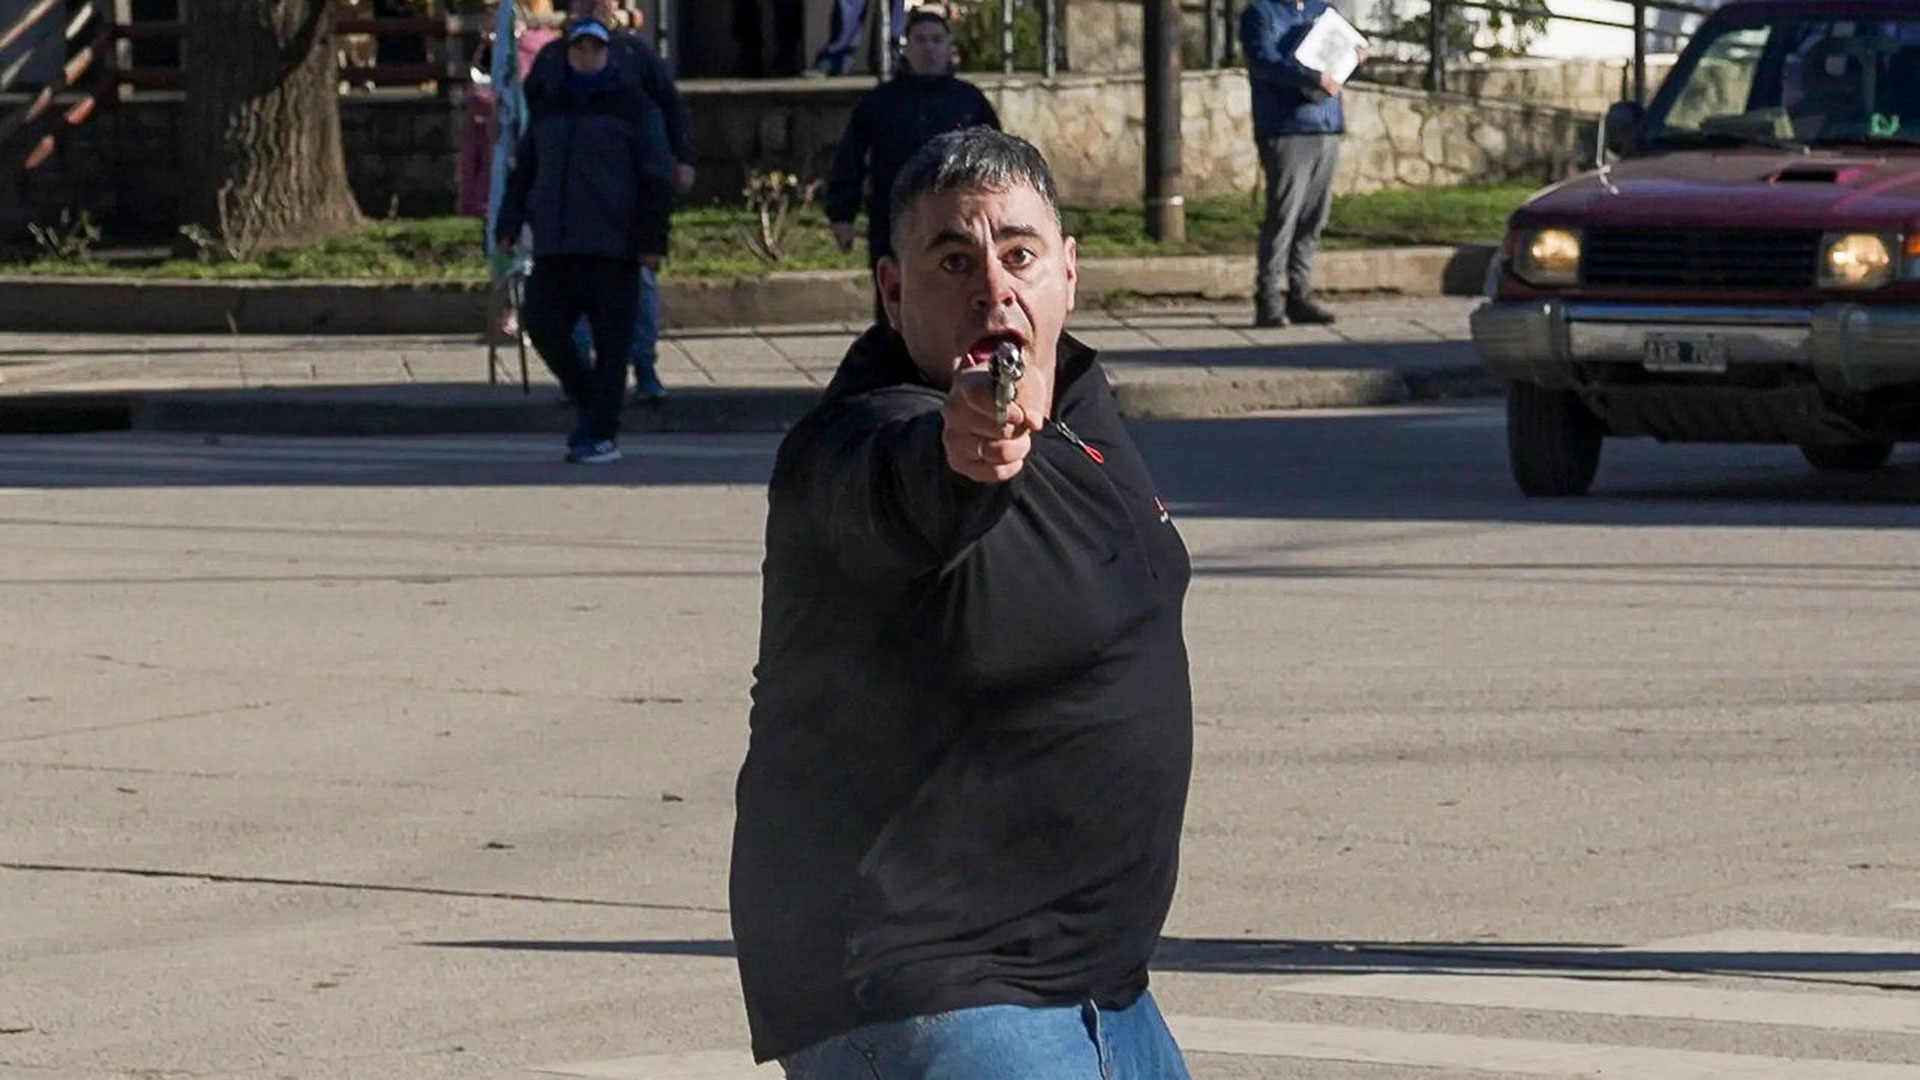 El hombre que le disparó al fotógrafo de prensa (Foto: Federico Soto)